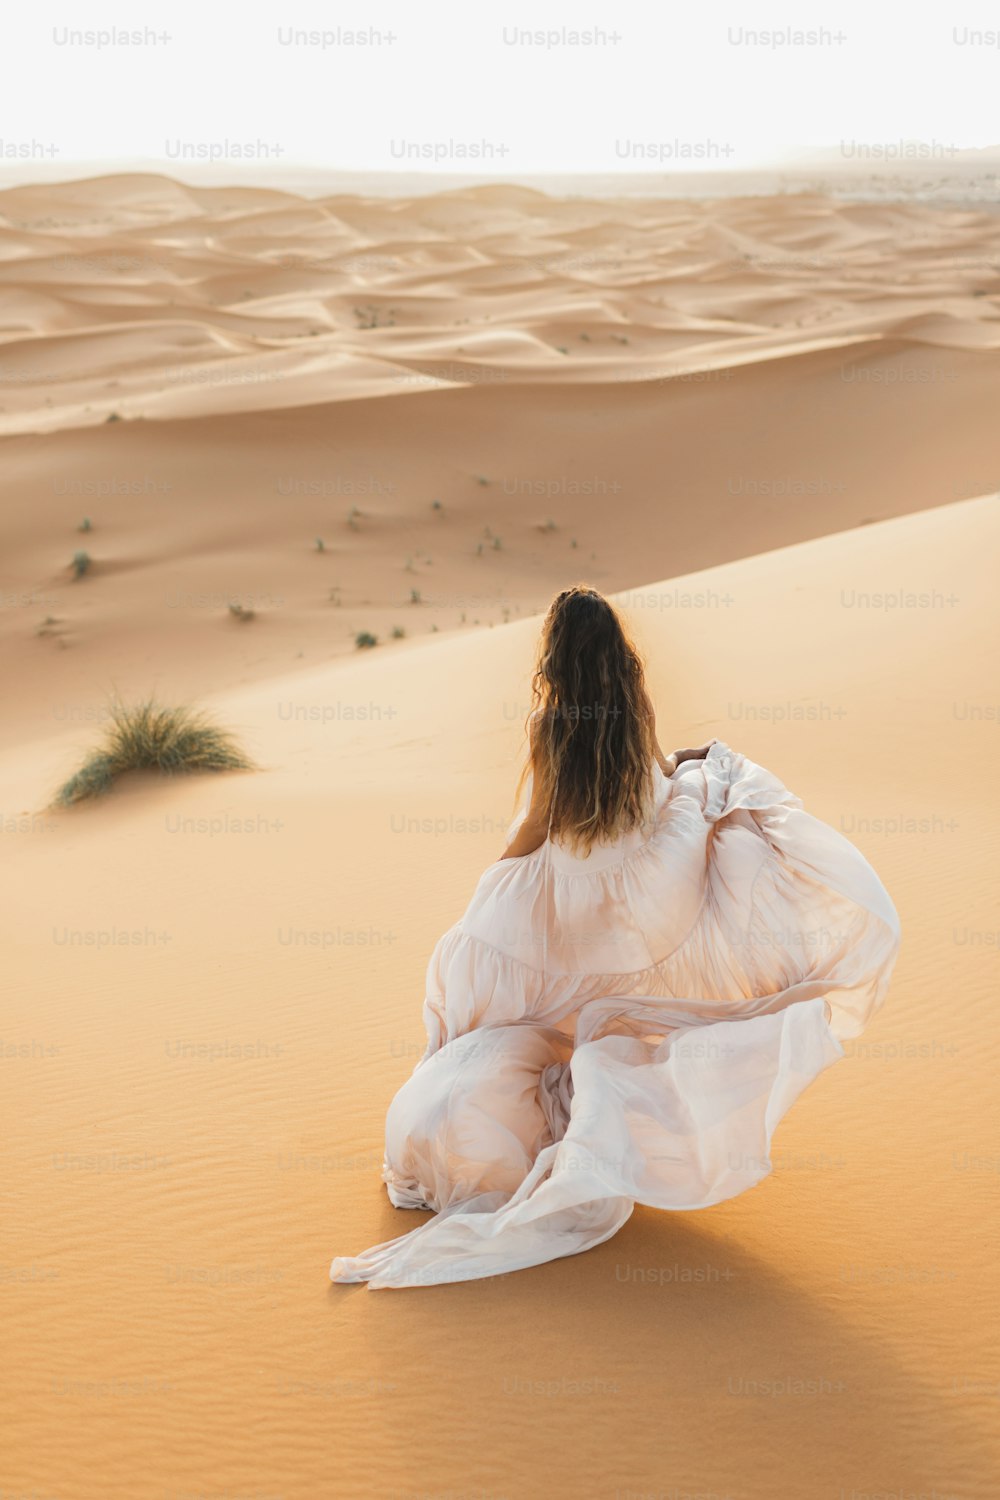 モロッコのサハラ砂漠で素晴らしいウェディングドレスを着た花嫁女性のポートレート。暖かい夜の光、美しいパステルトーン、地平線上の砂丘。後ろからの眺め。